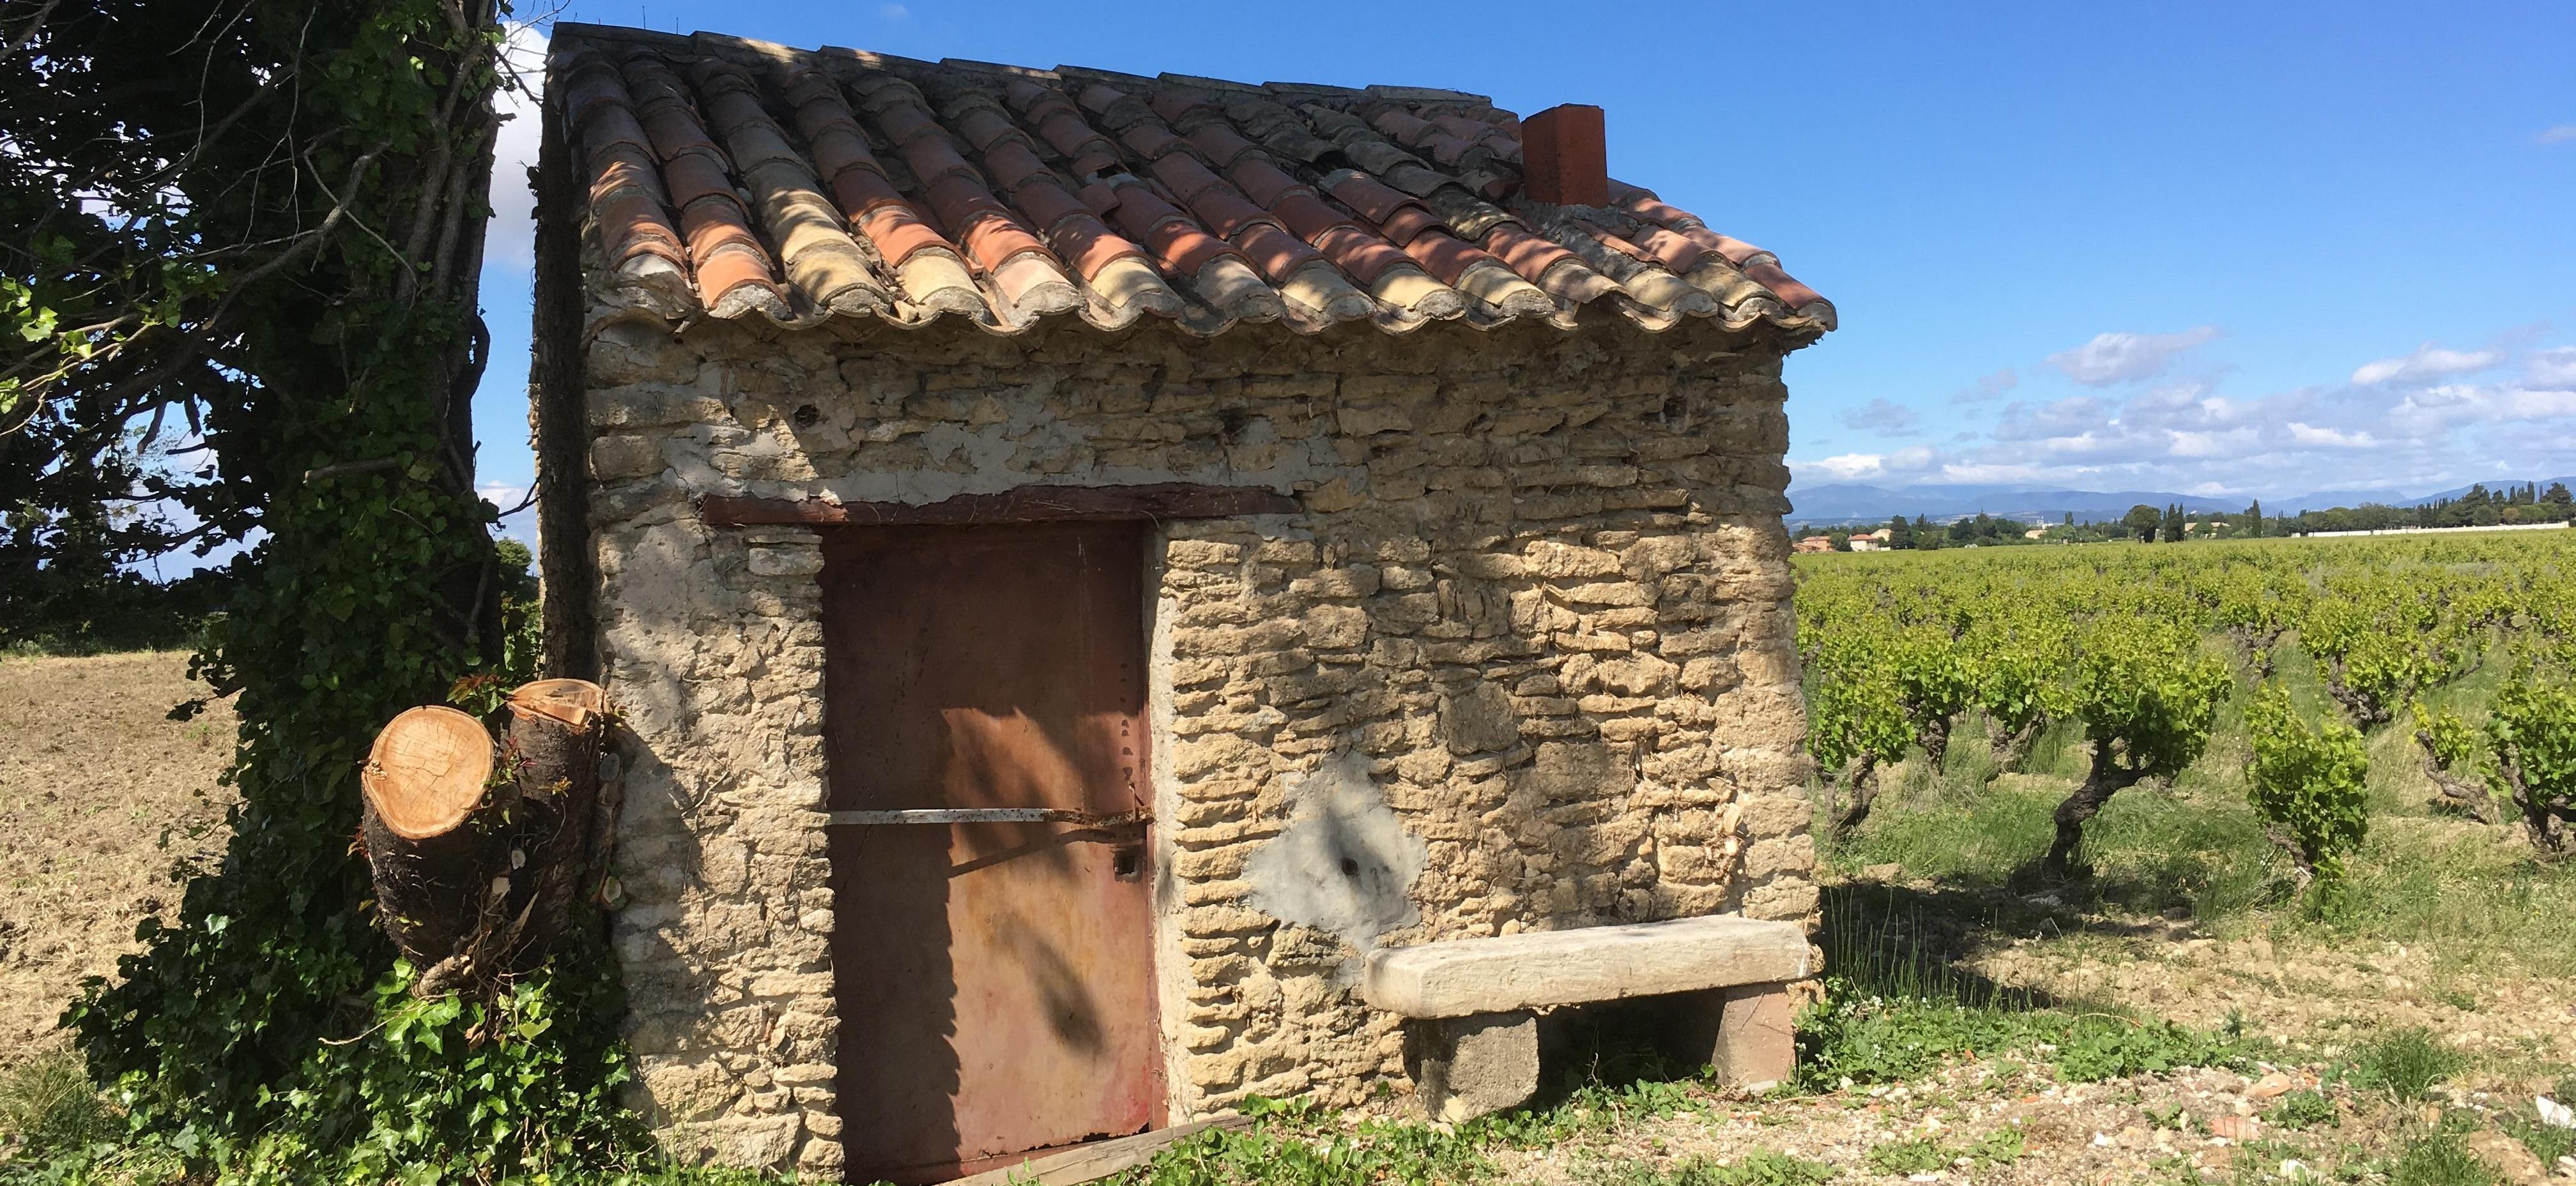 Restauration et valorisation du patrimoine rural non protégé en Région Paca